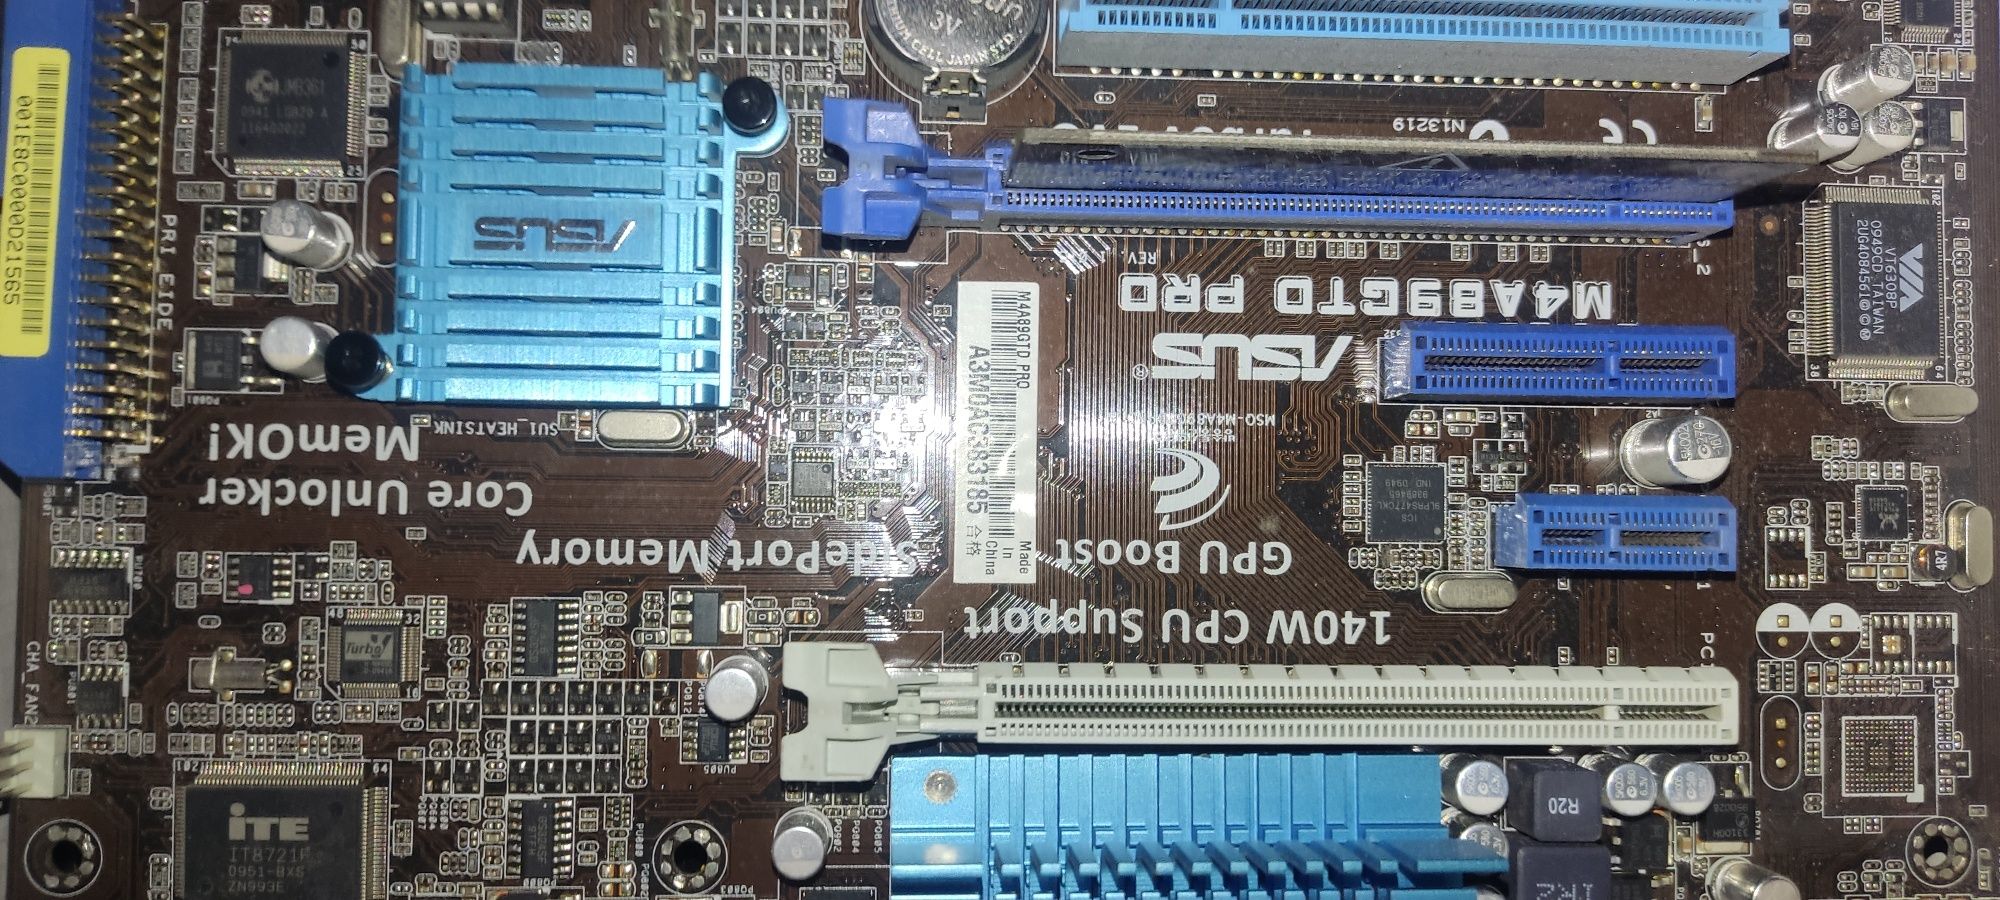 Asus m4a89gtd pro am3 AMD FX-6100 RAM DDR3 HYNIX 4 GB